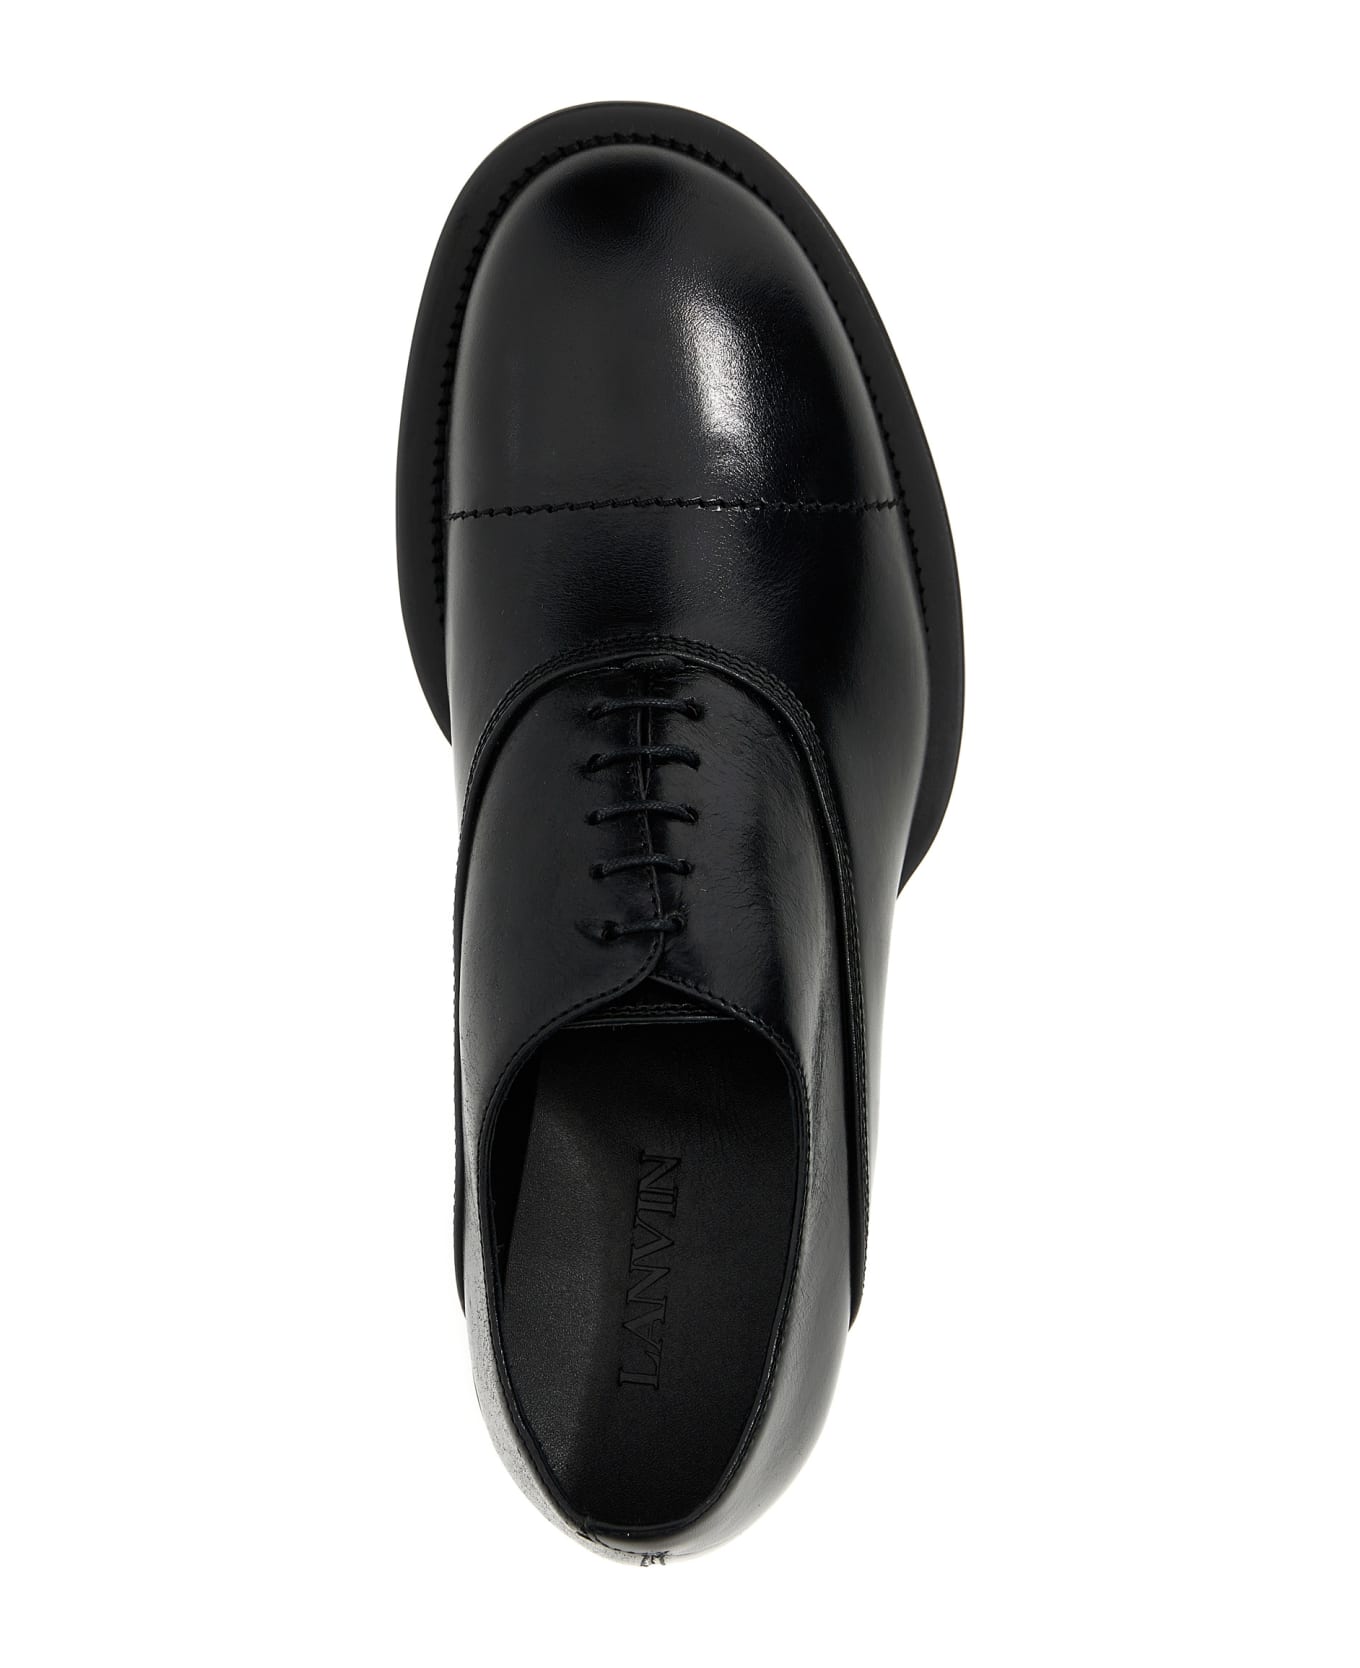 Lanvin 'richelieu Medley' Oxford Lace Up shoes Couture - Black